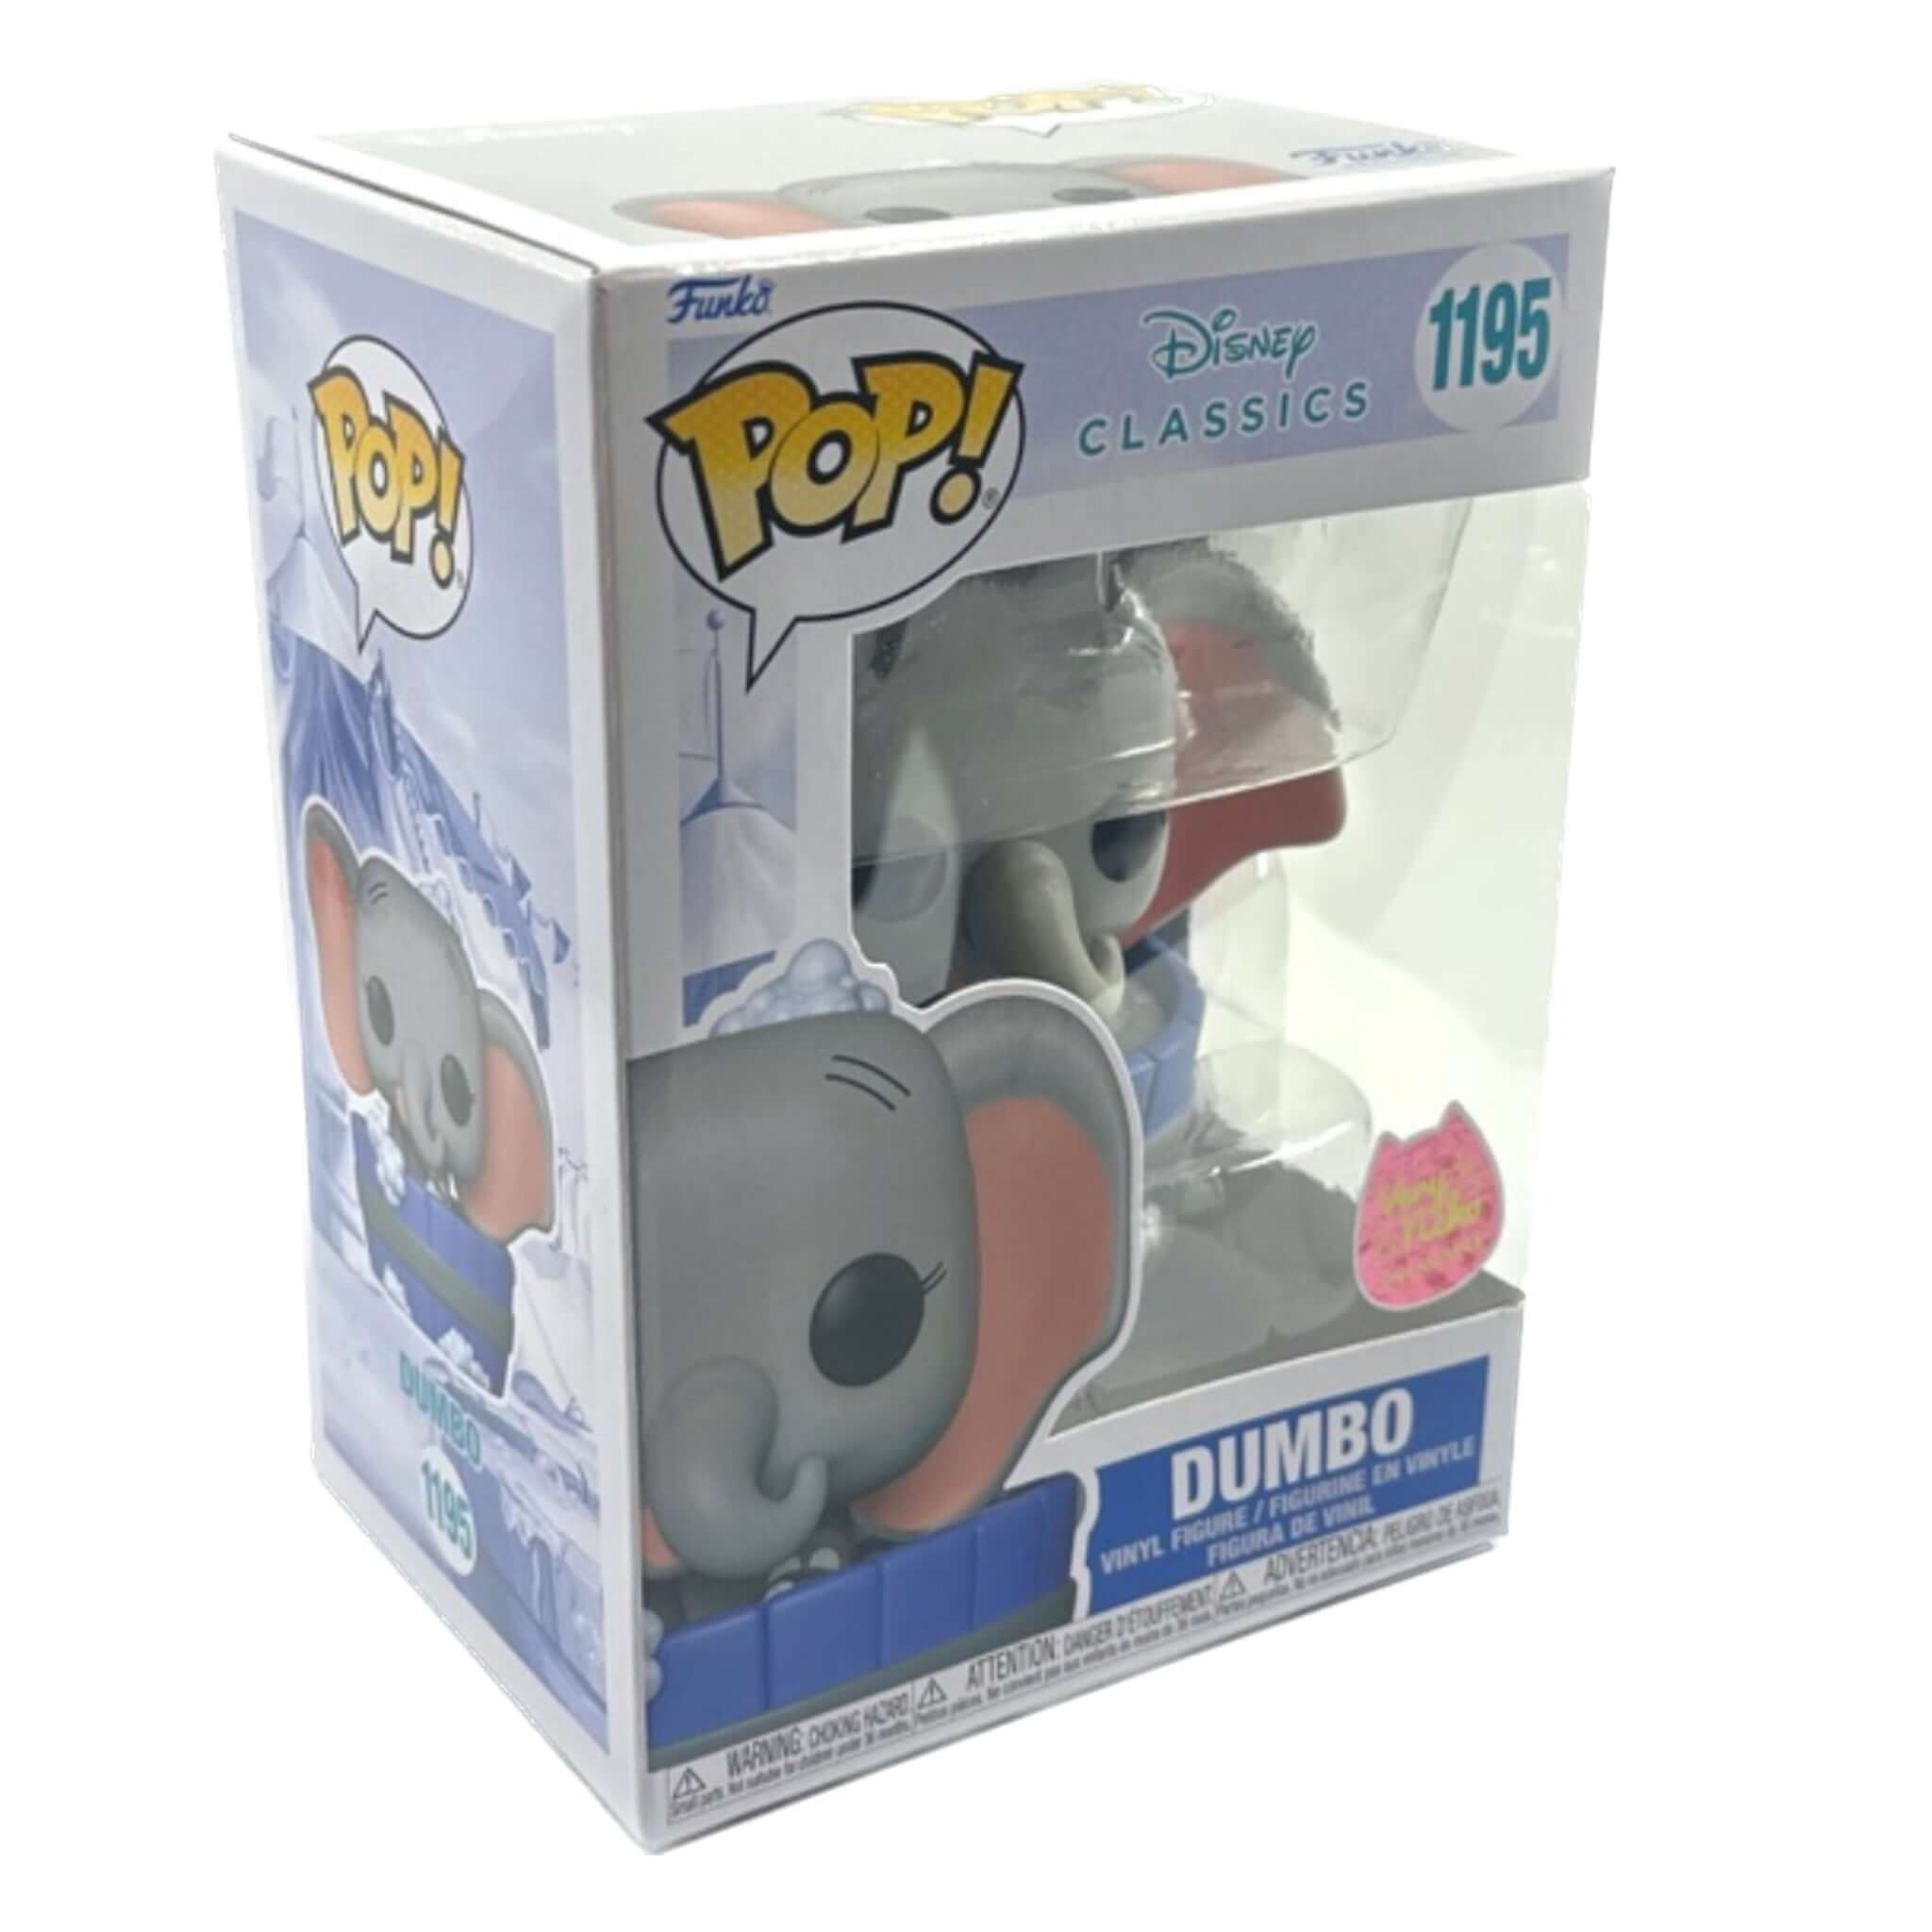 EXCLUSIVE VERY NEKO Dumbo Funko Pop!